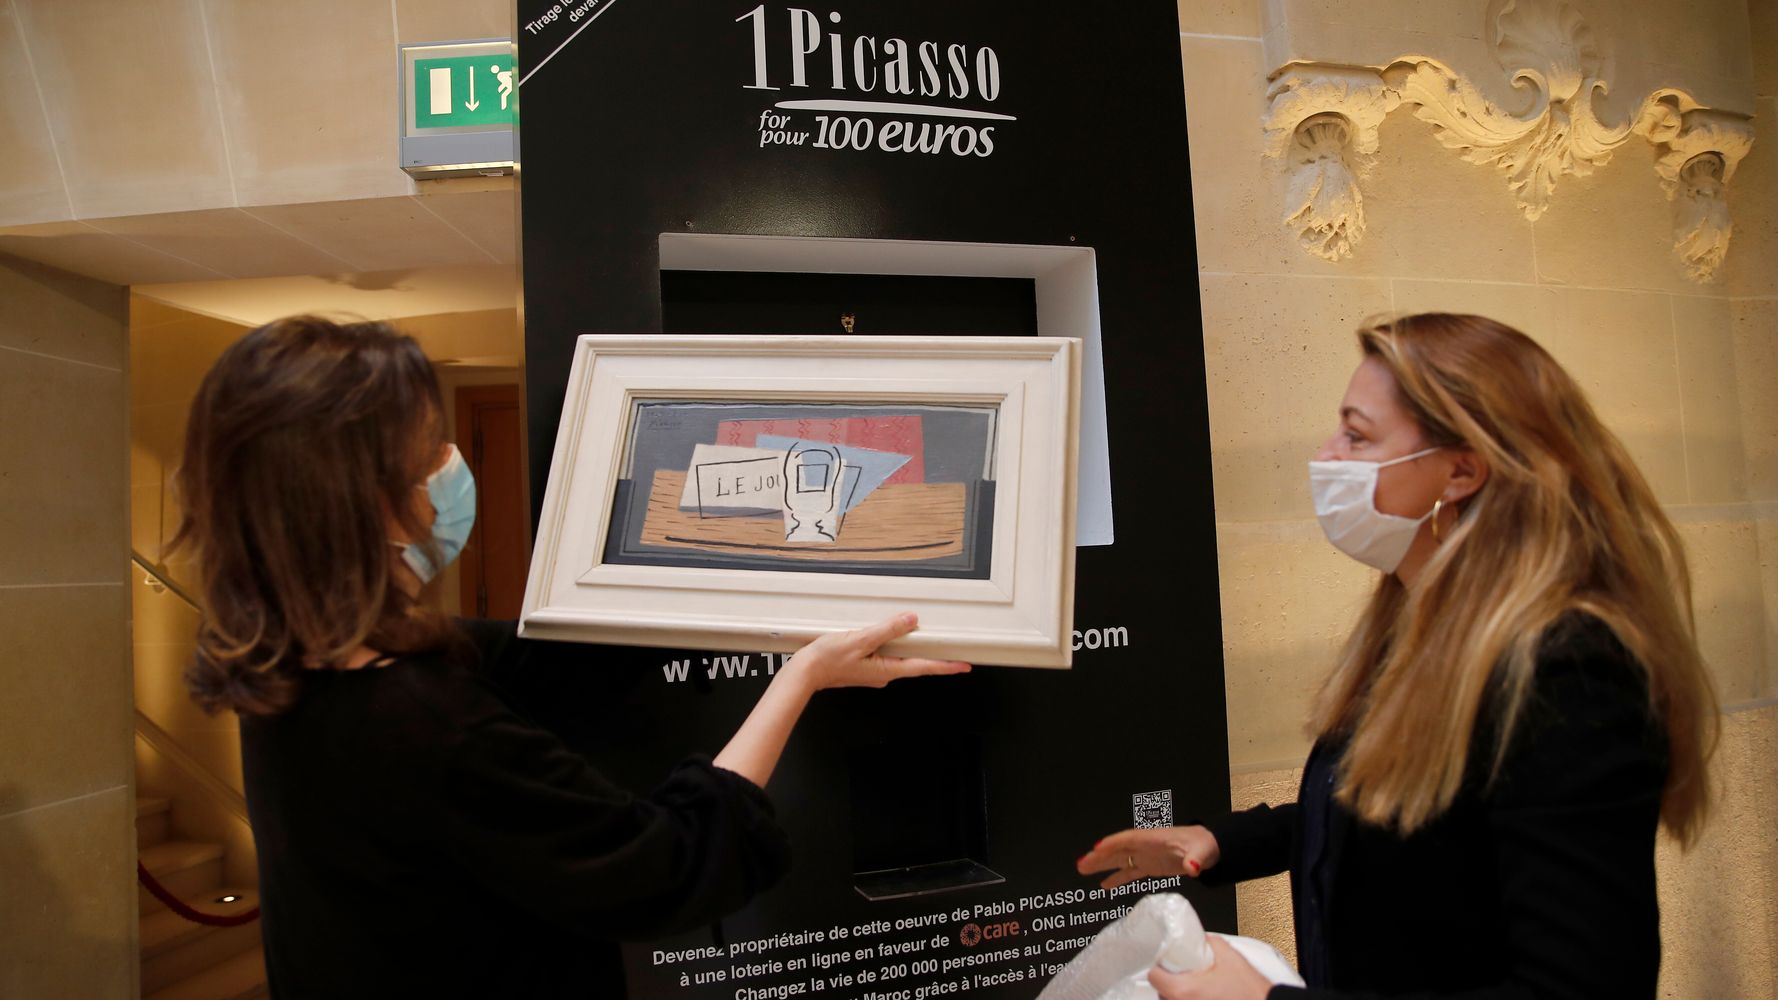 On lui offre un ticket et elle remporte un Picasso valant 1 million d'euros !